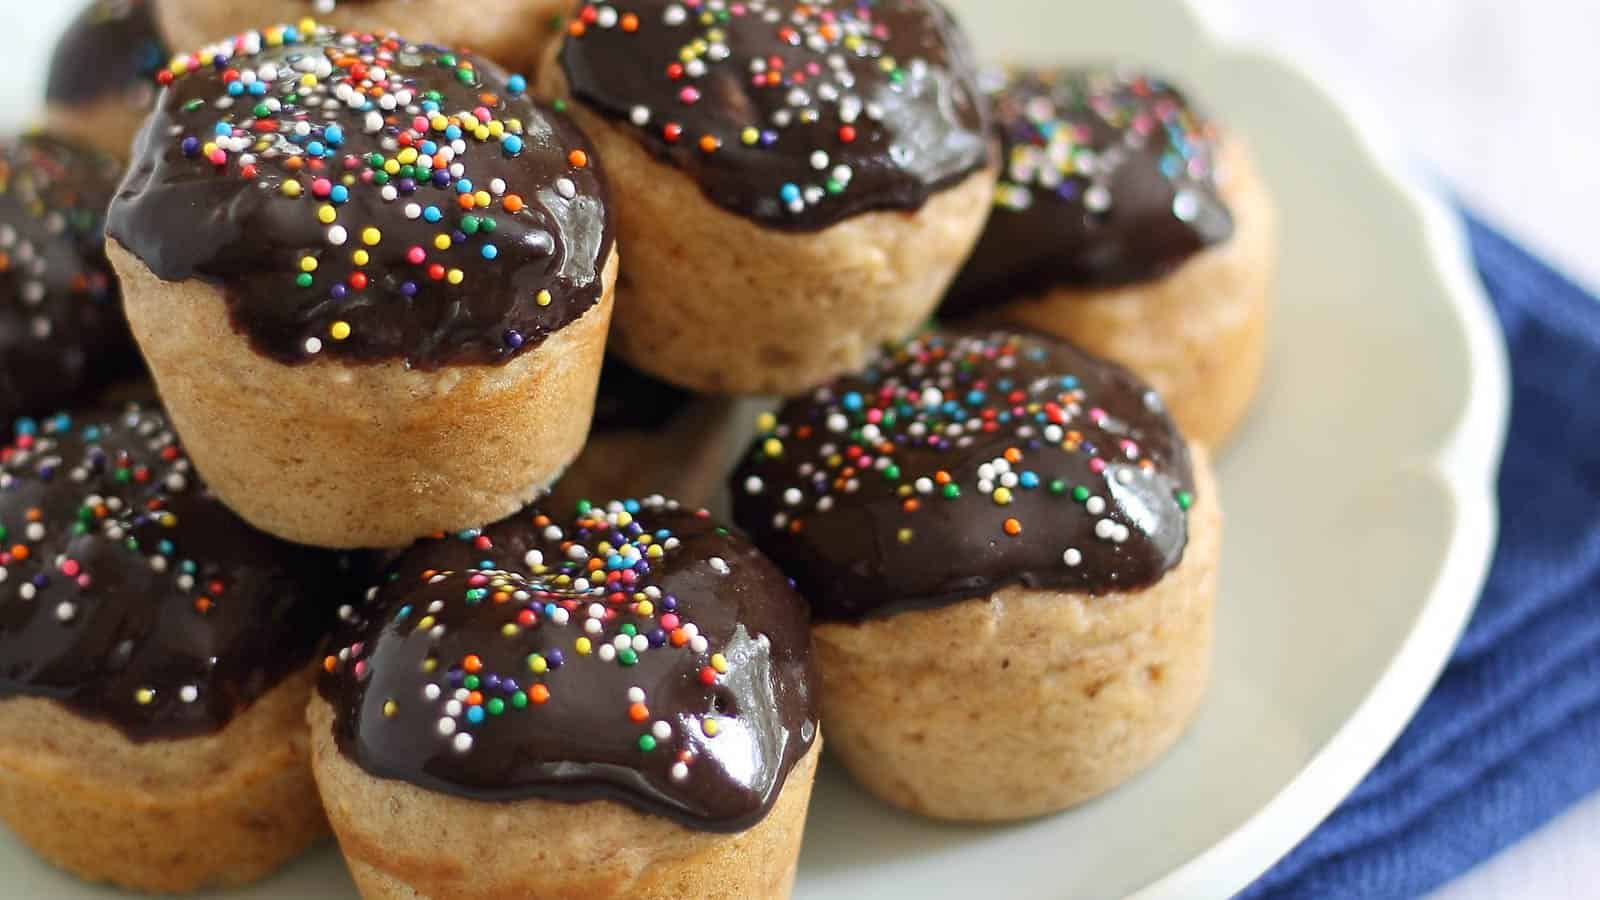 Chocolate glazed donut bites with rainbow sprinkles.